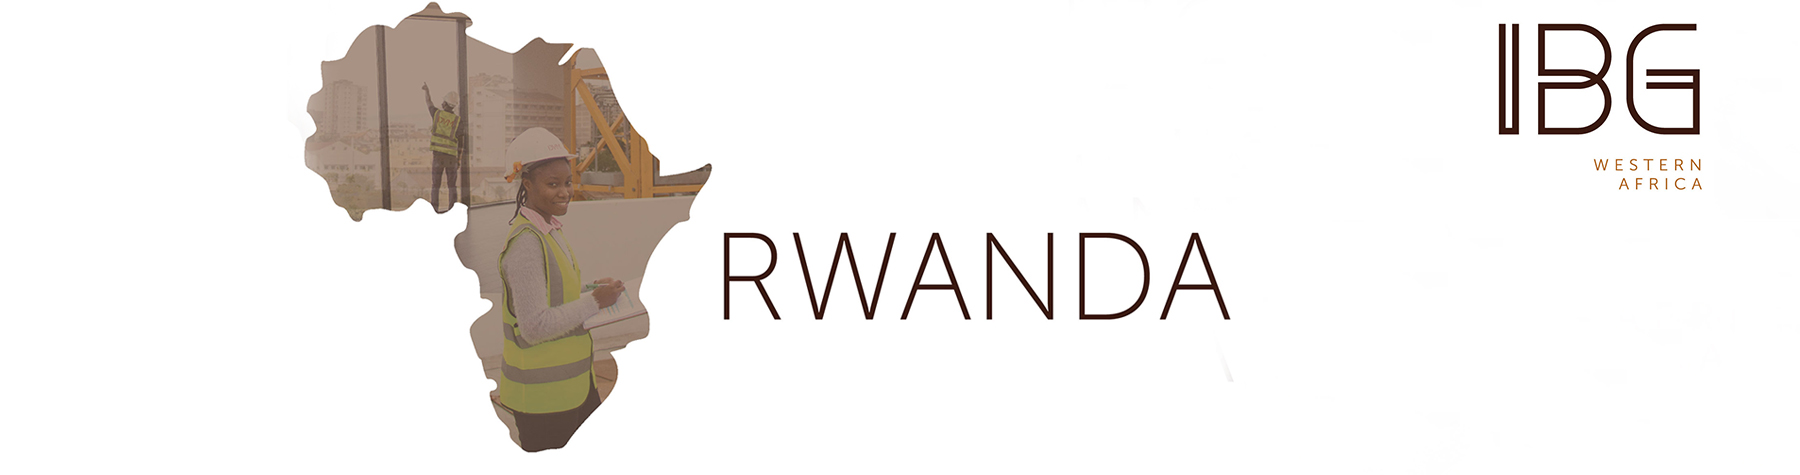 IBG Ruanda